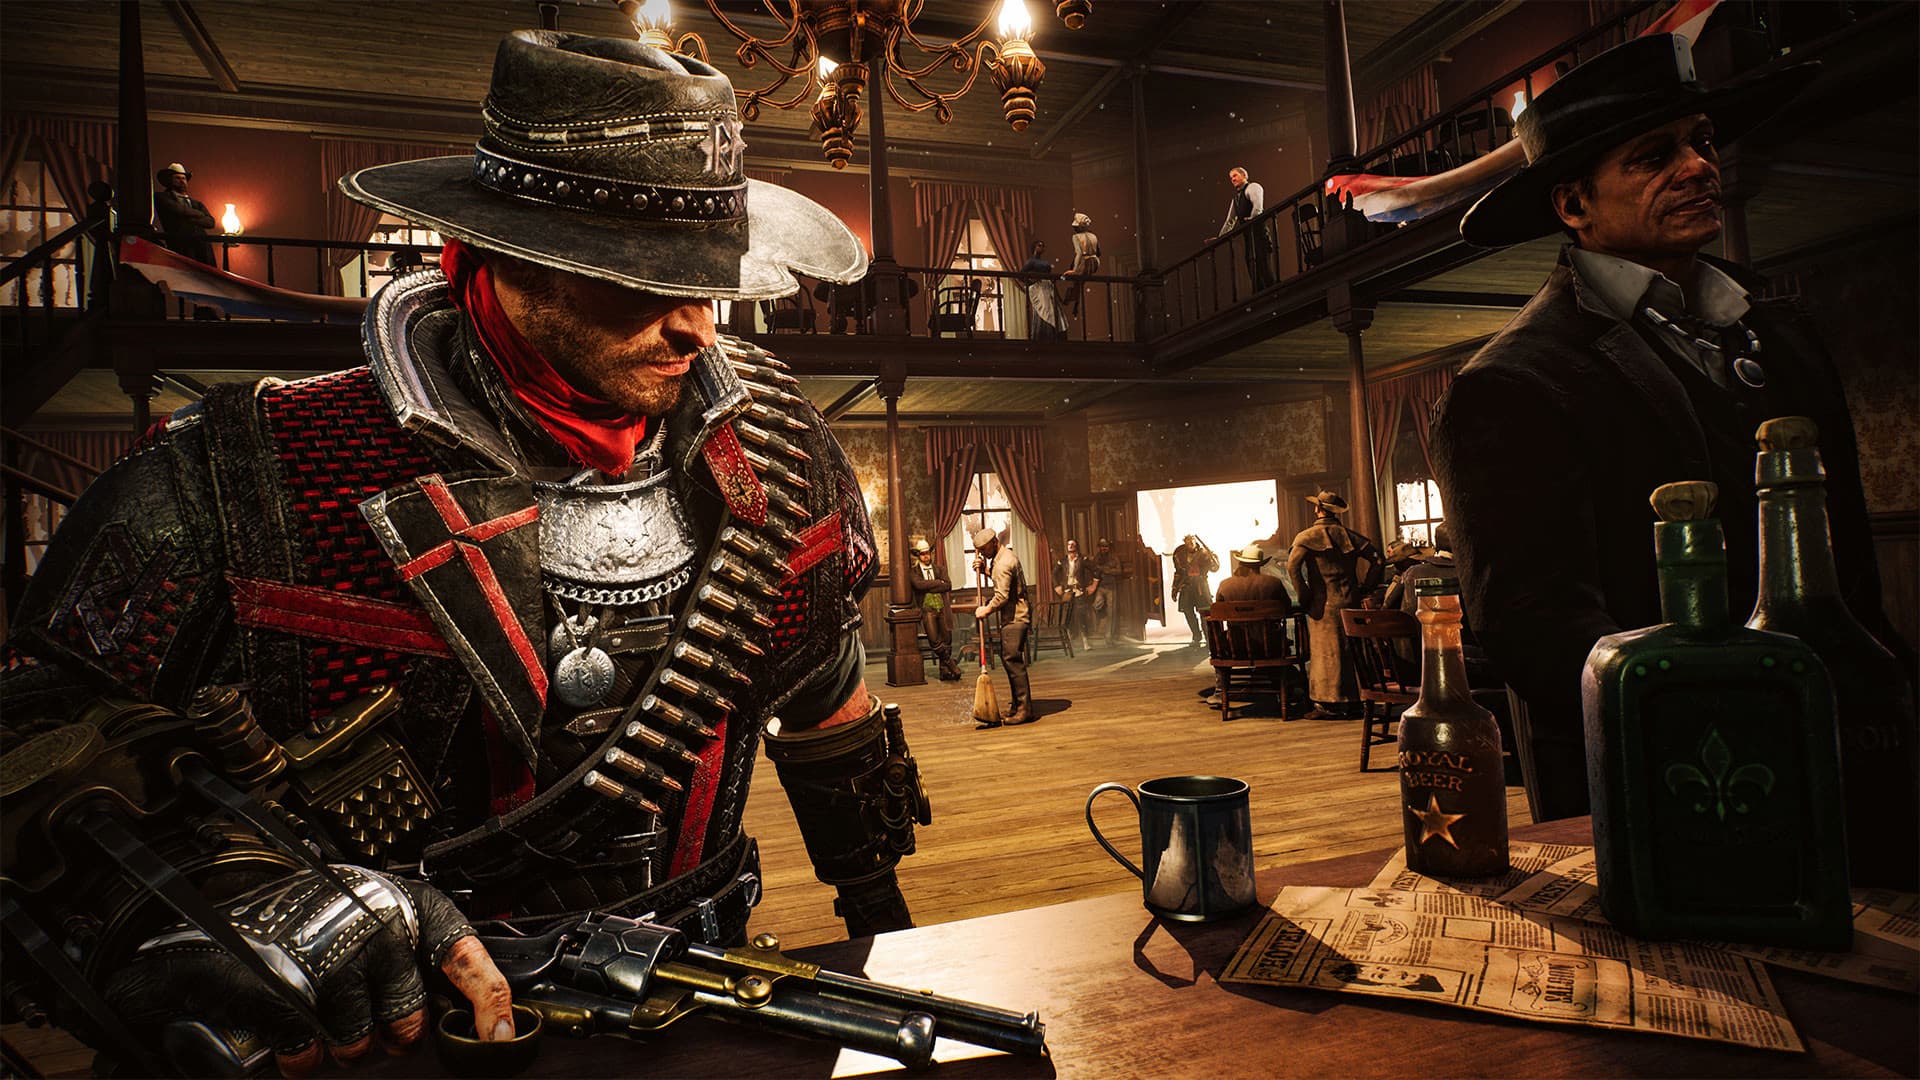 Red Dead Redemption 2: Veja os requisitos mínimos do game para